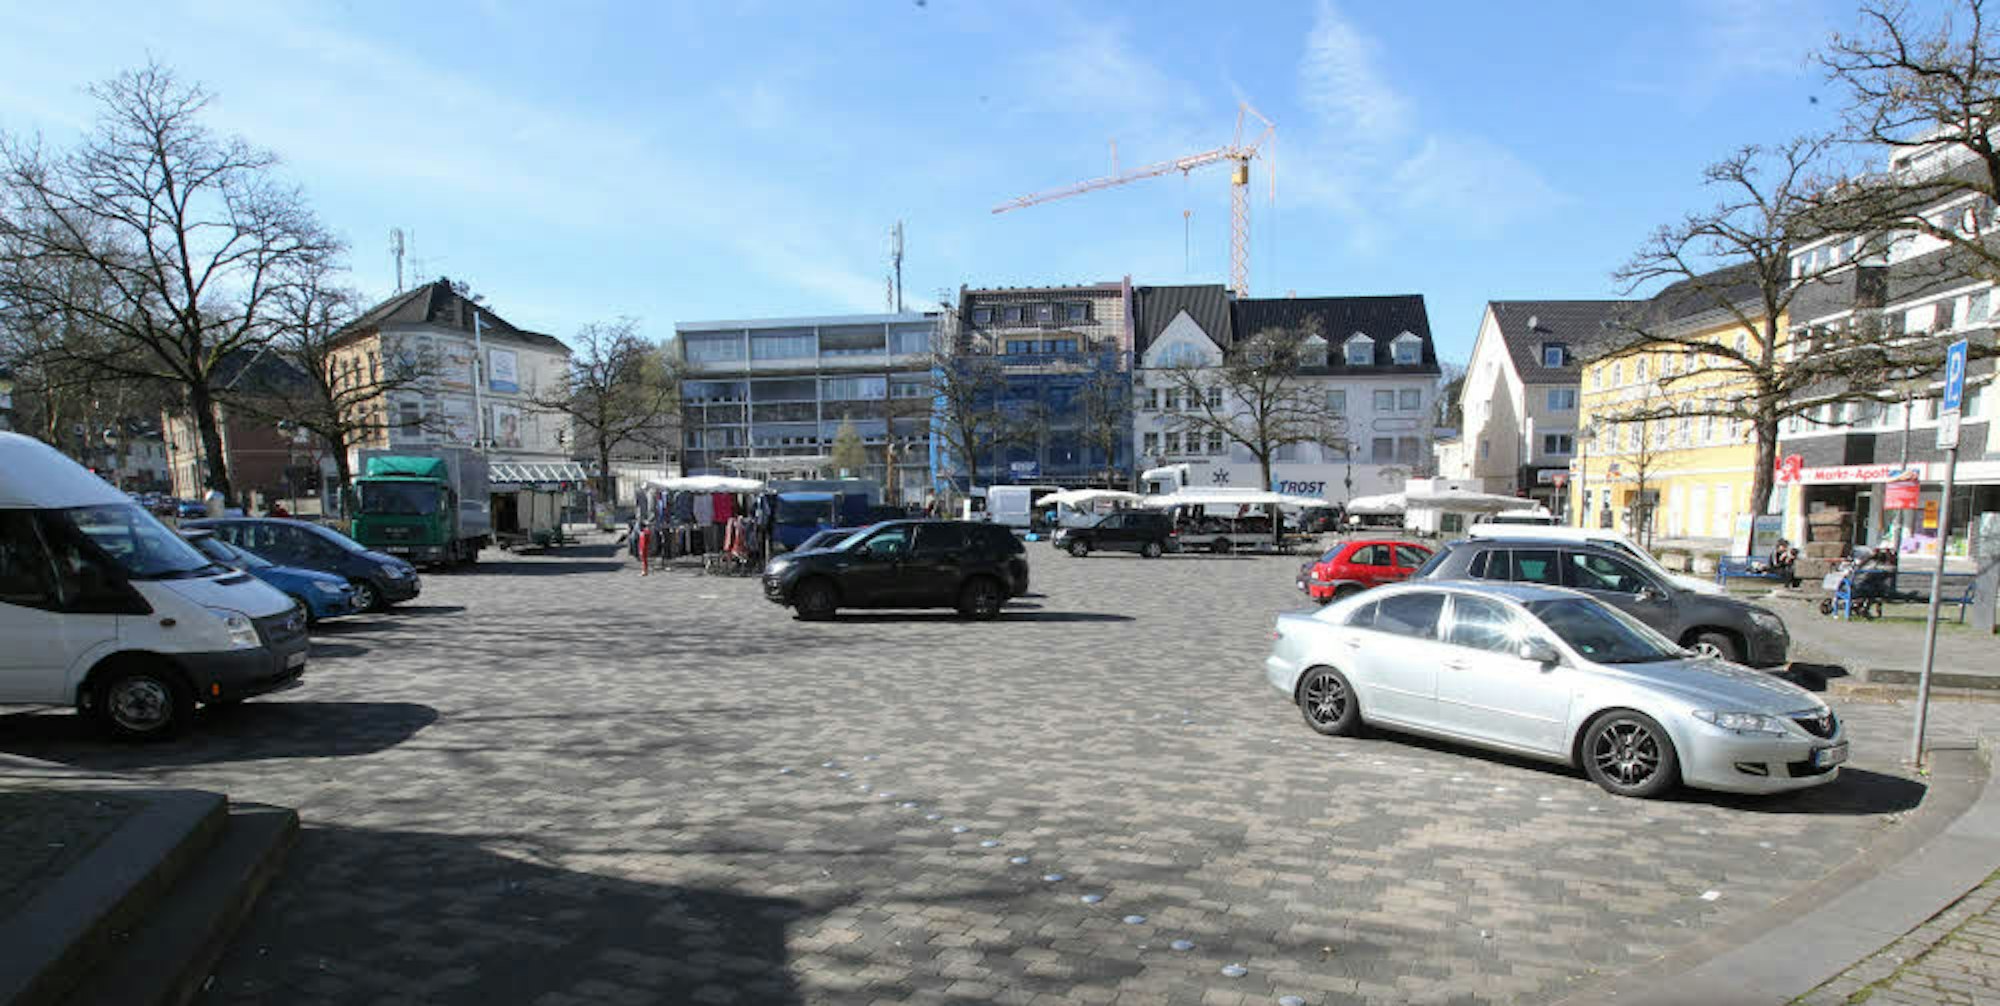 Die Eitorfer Bürger haben entschieden, dass weiterhin Autos auf dem Marktplatz parken dürfen.